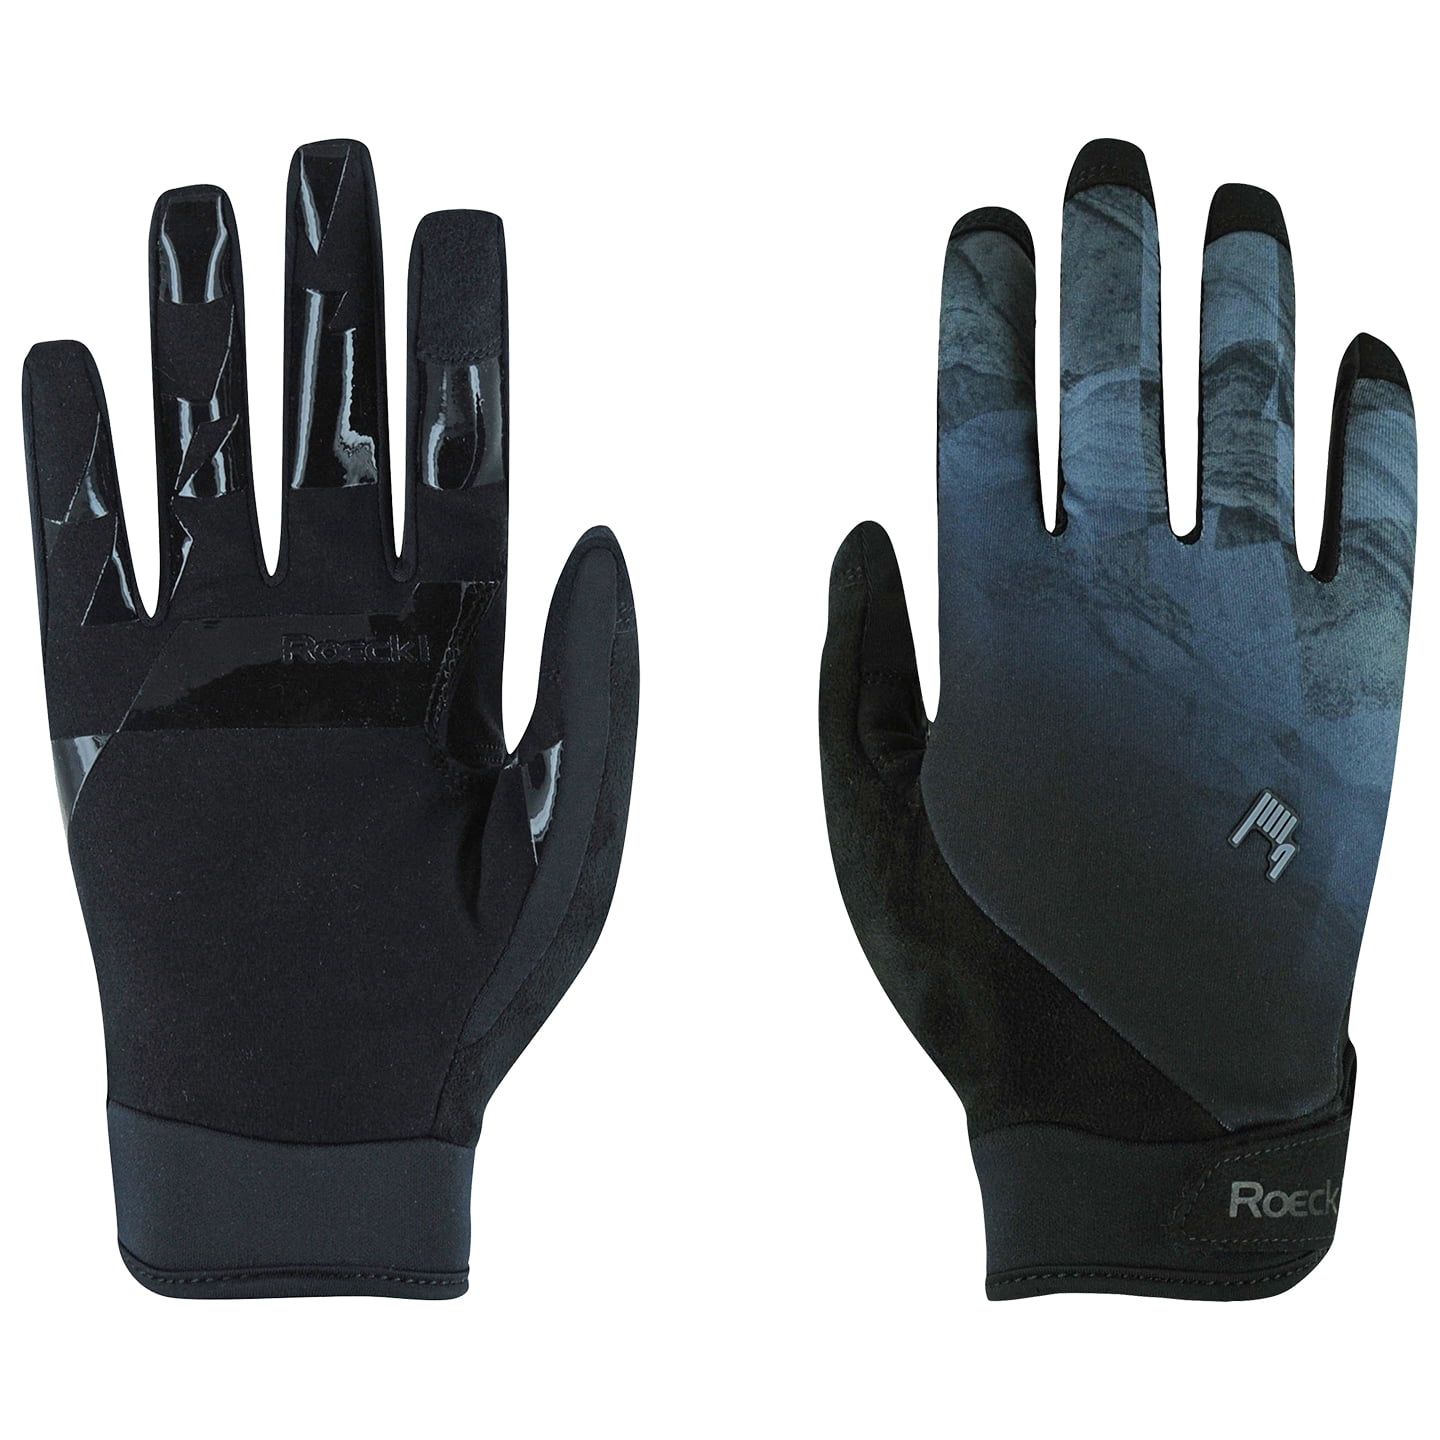 ROECKL Montan Full Finger Gloves Cycling Gloves, for men, size 10,5, Bike gloves, Bike clothing